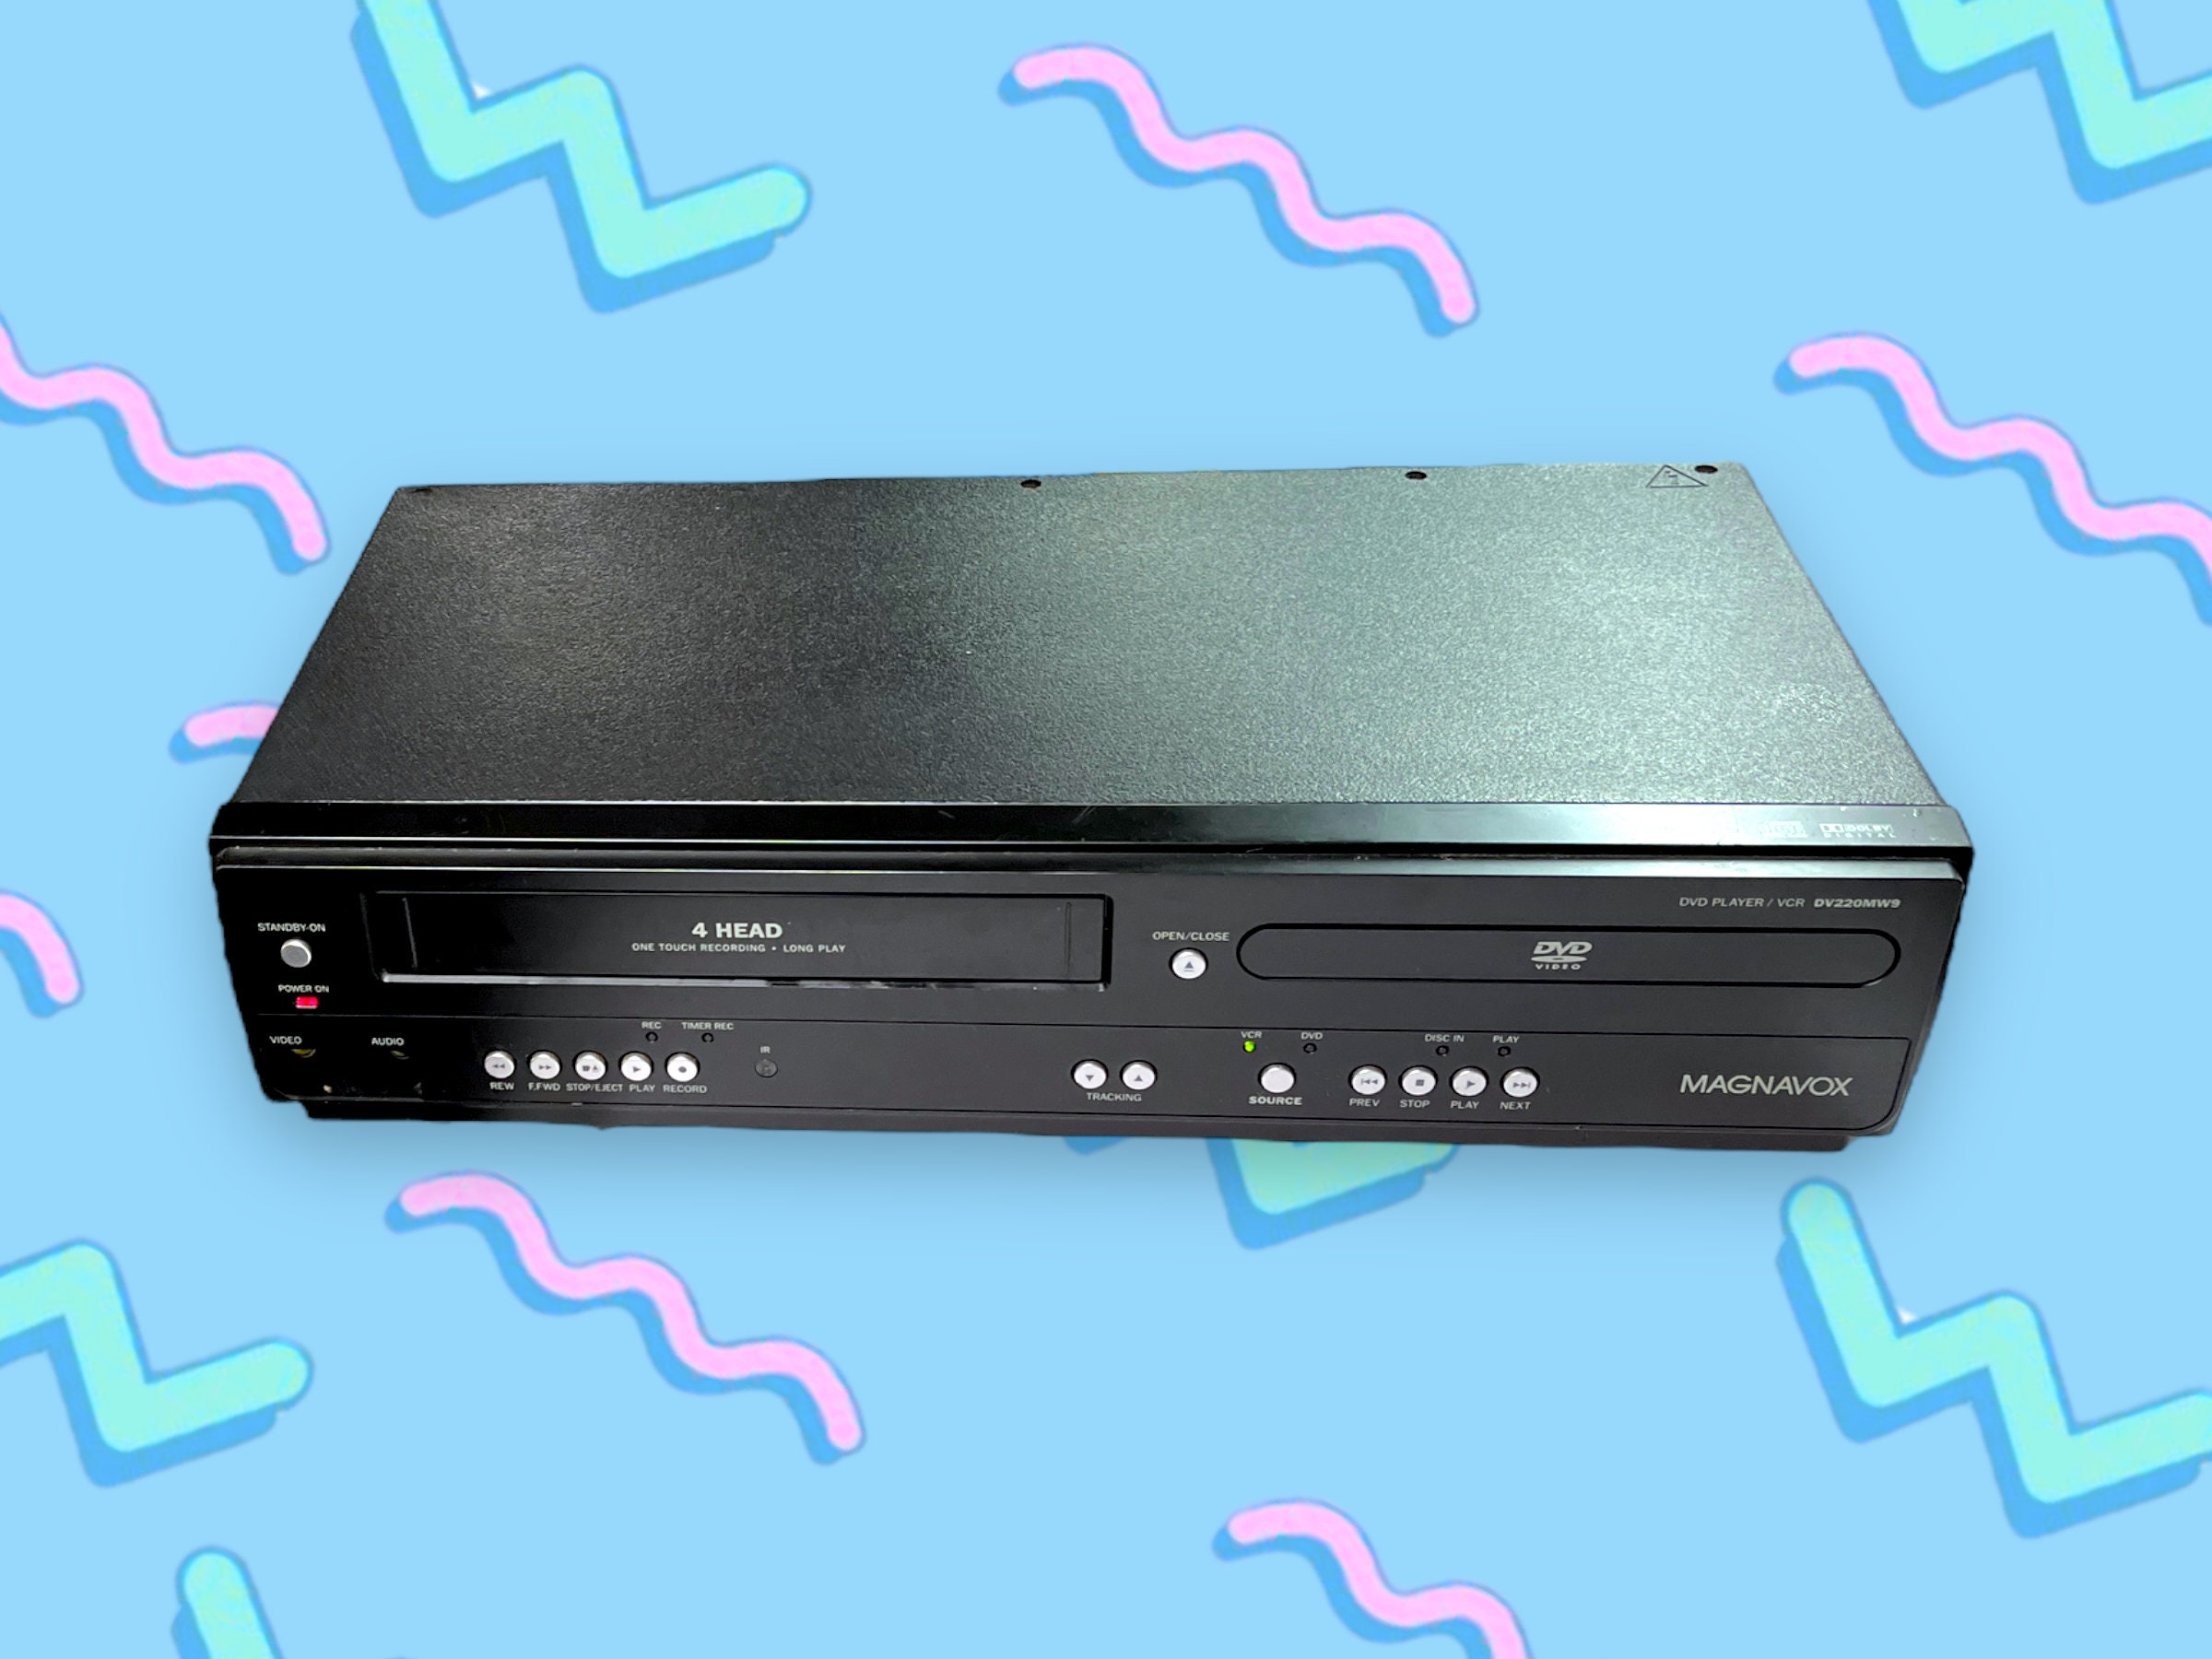 Magnavox - Reproductor de DVD y VCR. DV220MW9